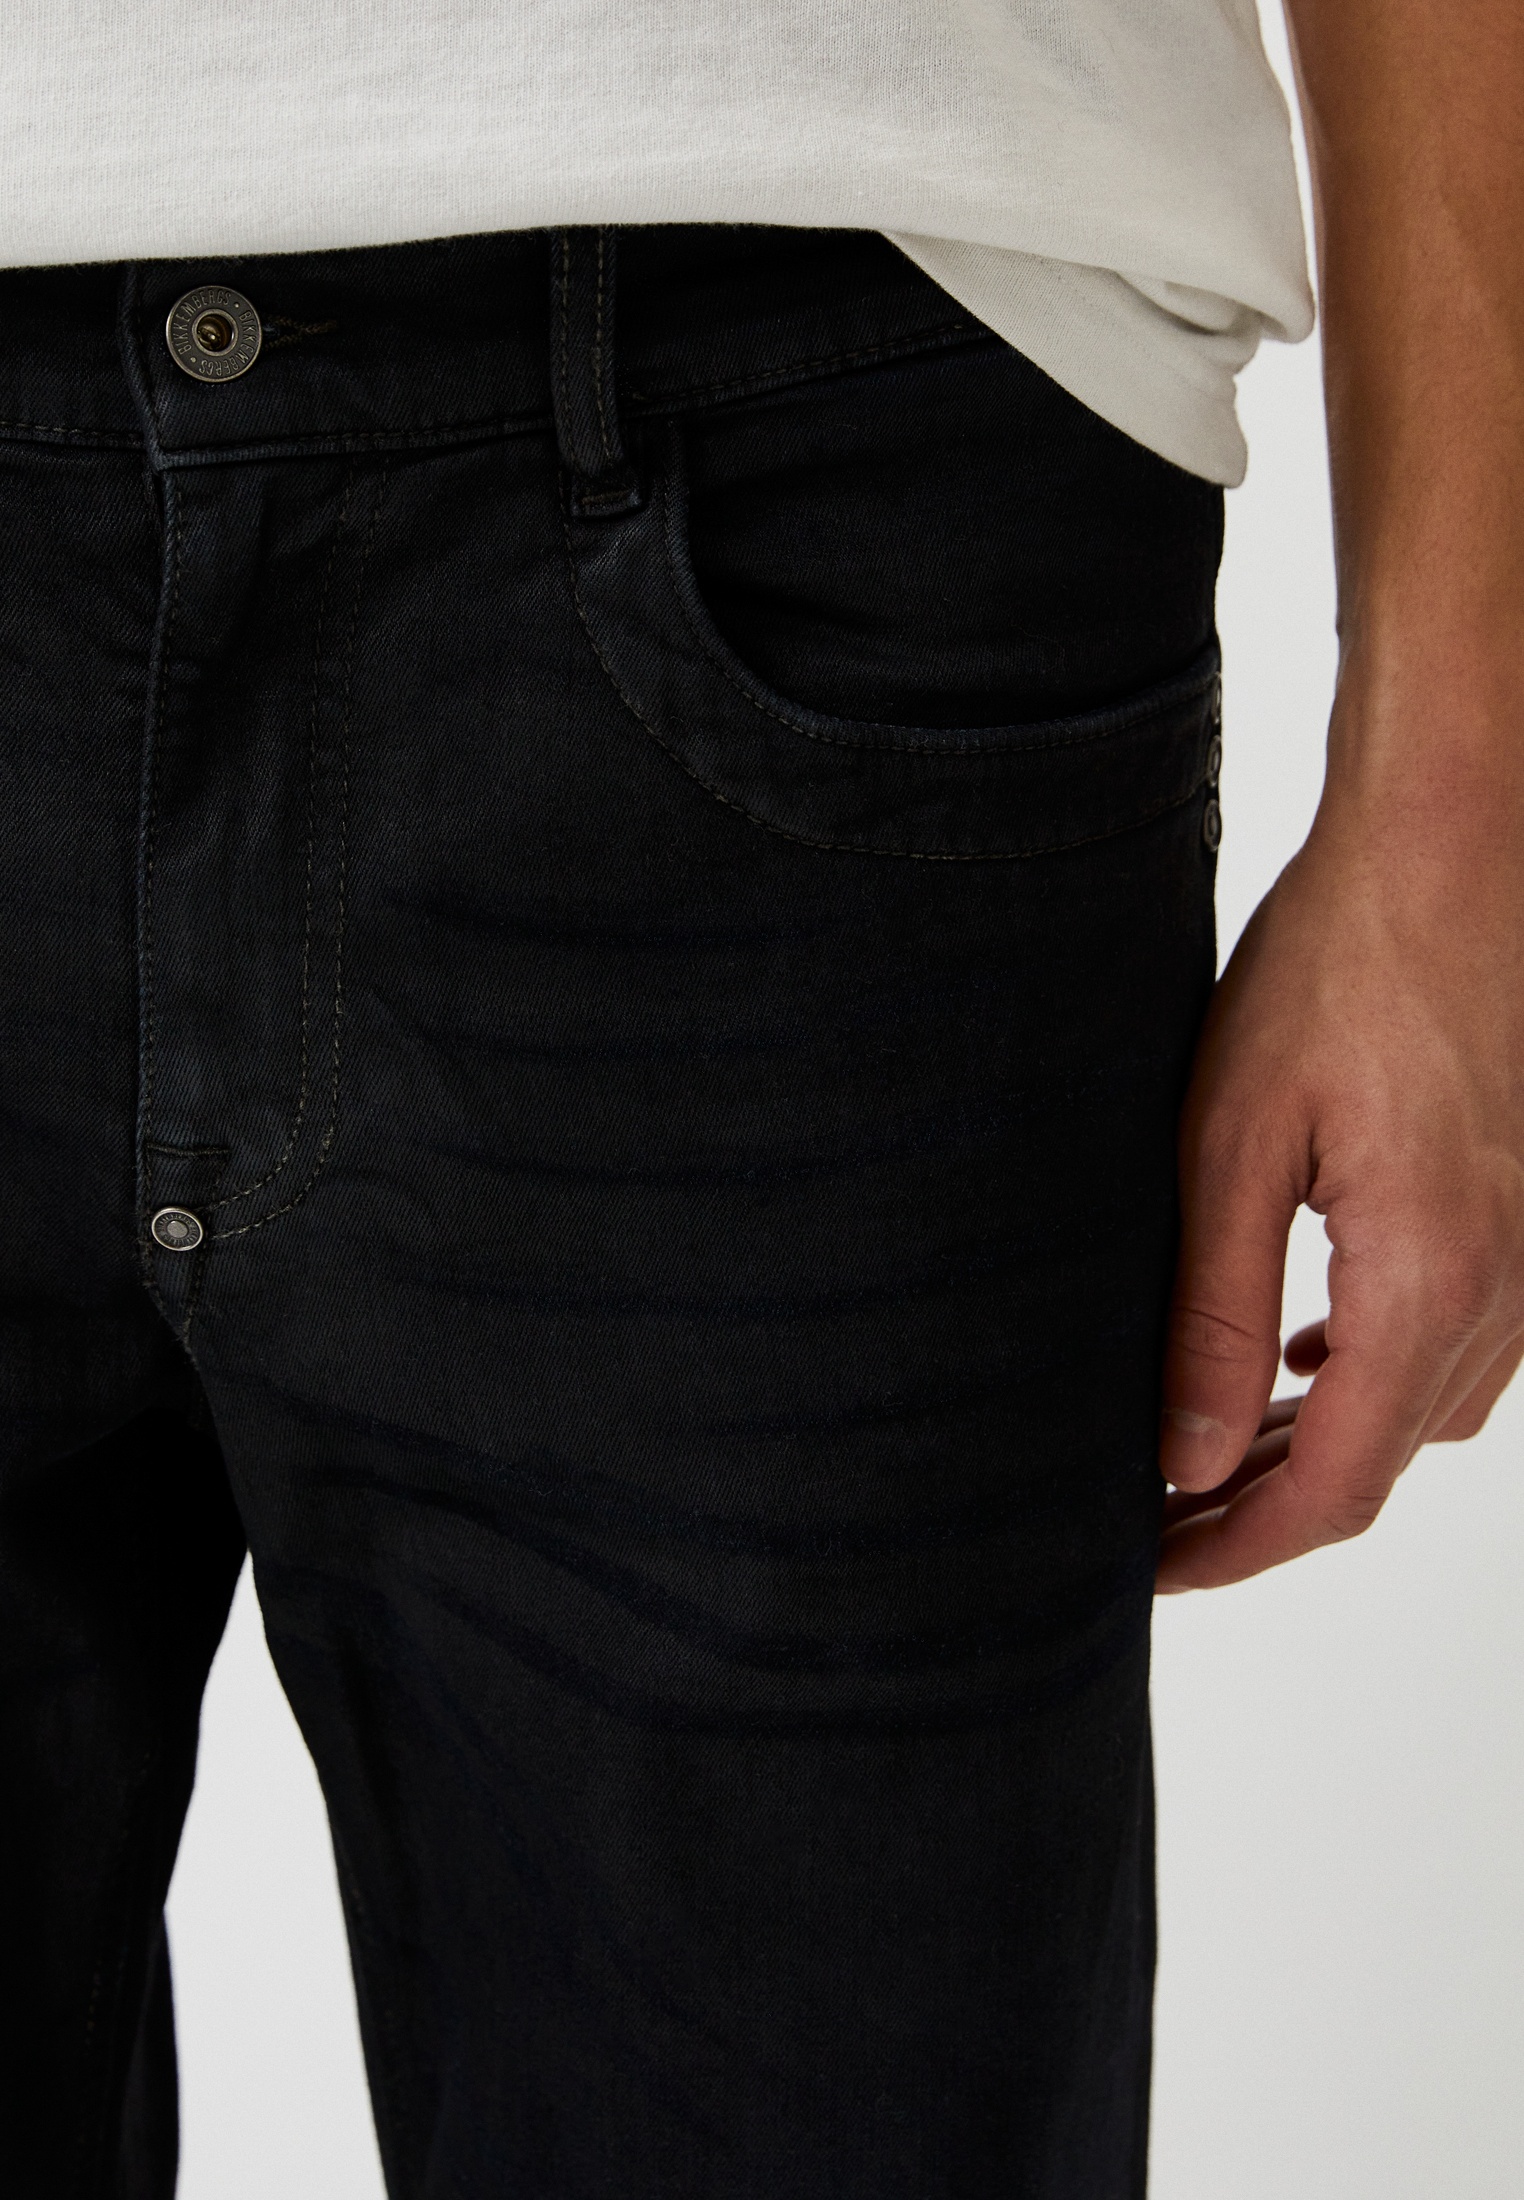 Мужские зауженные джинсы Bikkembergs (Биккембергс) C Q 101 88 S 3511: изображение 12